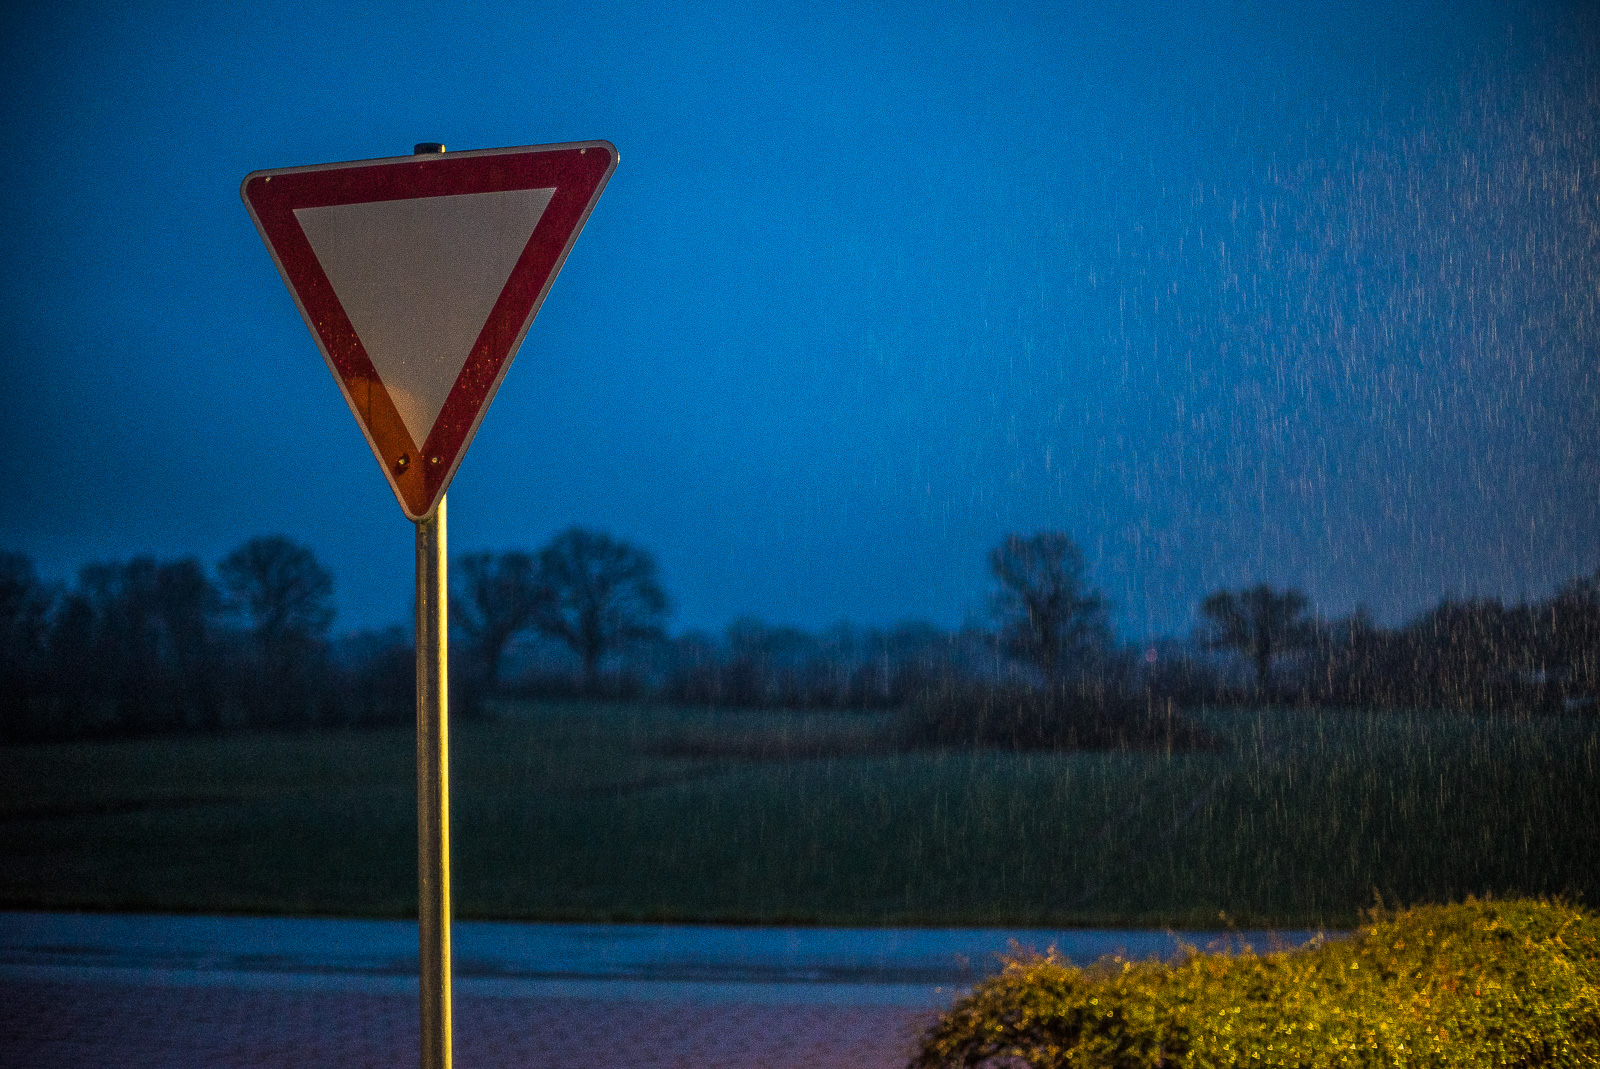 Ein Verkehrsschild "Vorfahrt gewähren" vor dem Hintergrund einer Feldlandschaft mit Bäumen, abends, bei kräftigem Regen